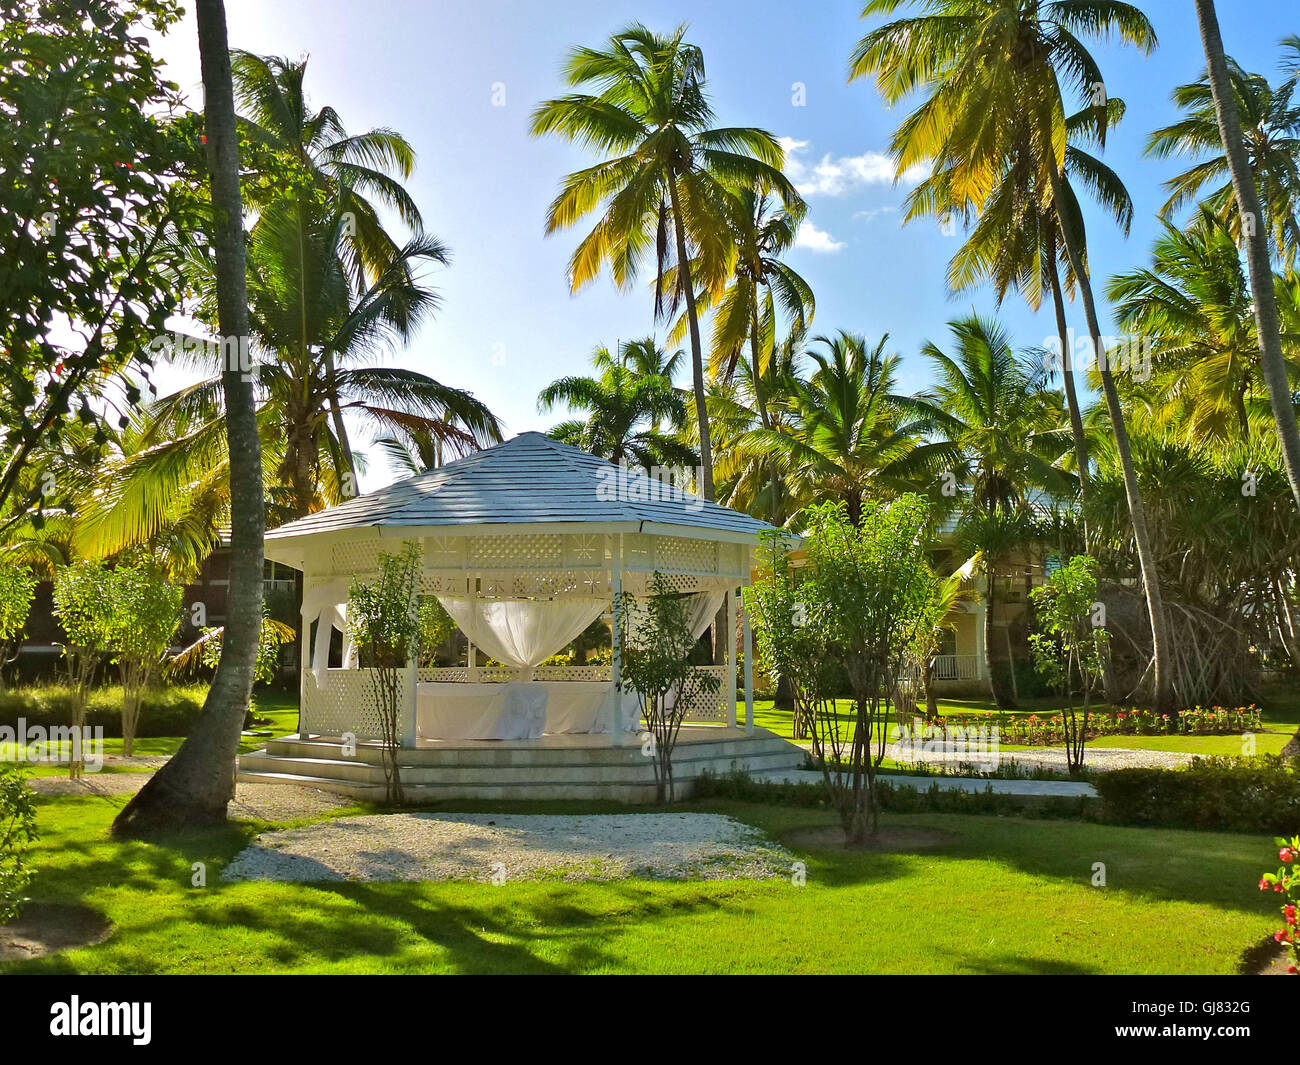 La République dominicaine, pavillon de mariage, l'Hôtel Palladium, les Caraïbes, Playa Bavaro, Punta Cana Banque D'Images